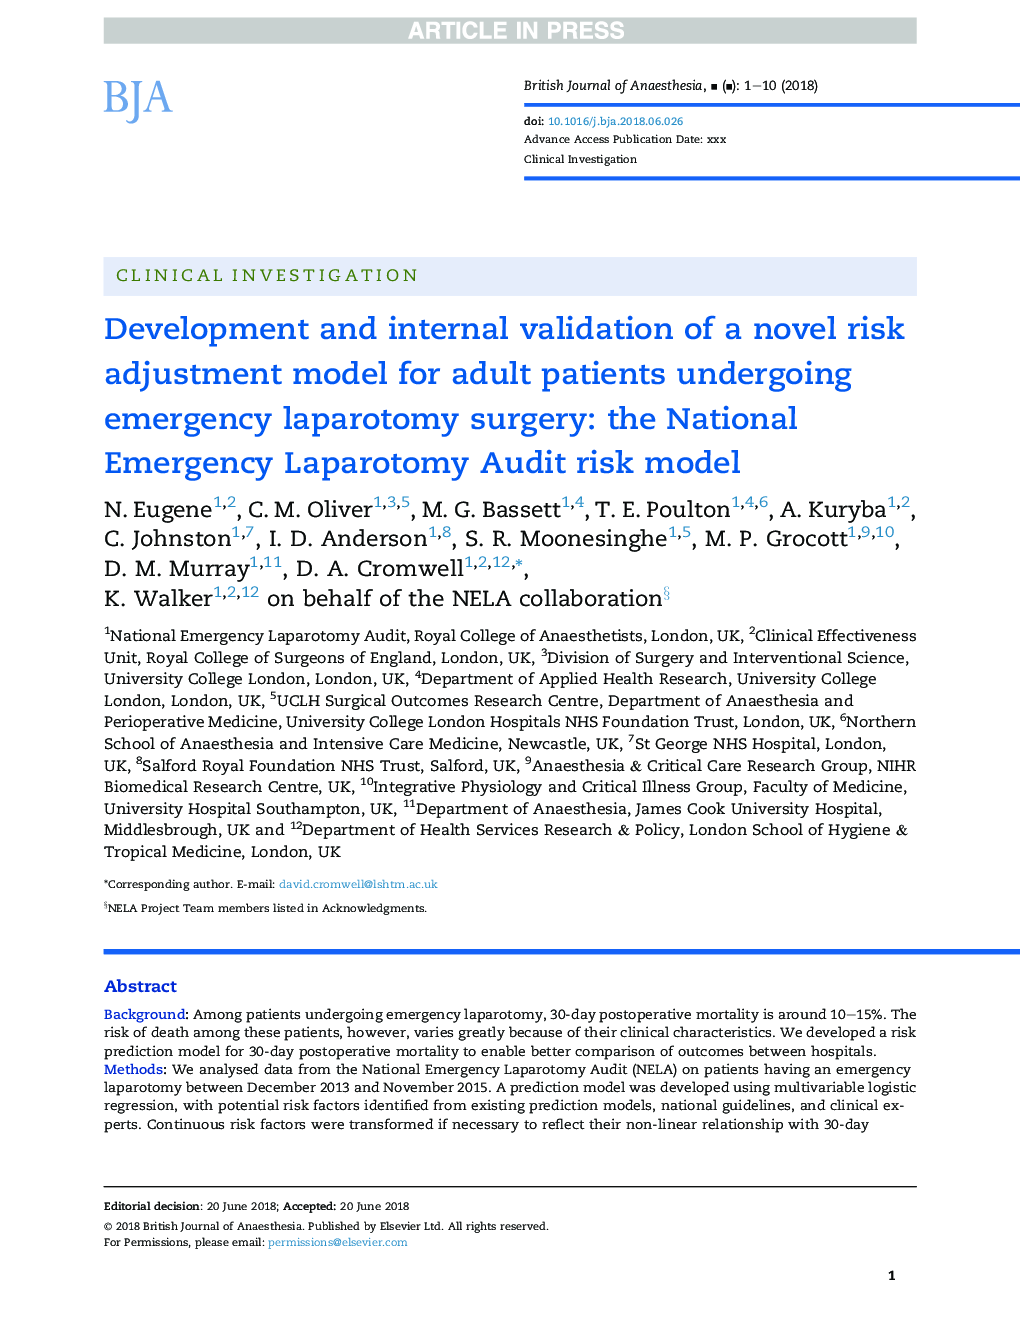 اعتبار سنجی توسعه و اعتبار یک مدل ریسک جدید ریسک برای بیماران بالغ تحت عمل جراحی لاپاروتومی اورژانس: مدل ریسک حسابرسی اضطراری لپاراتومی ملی